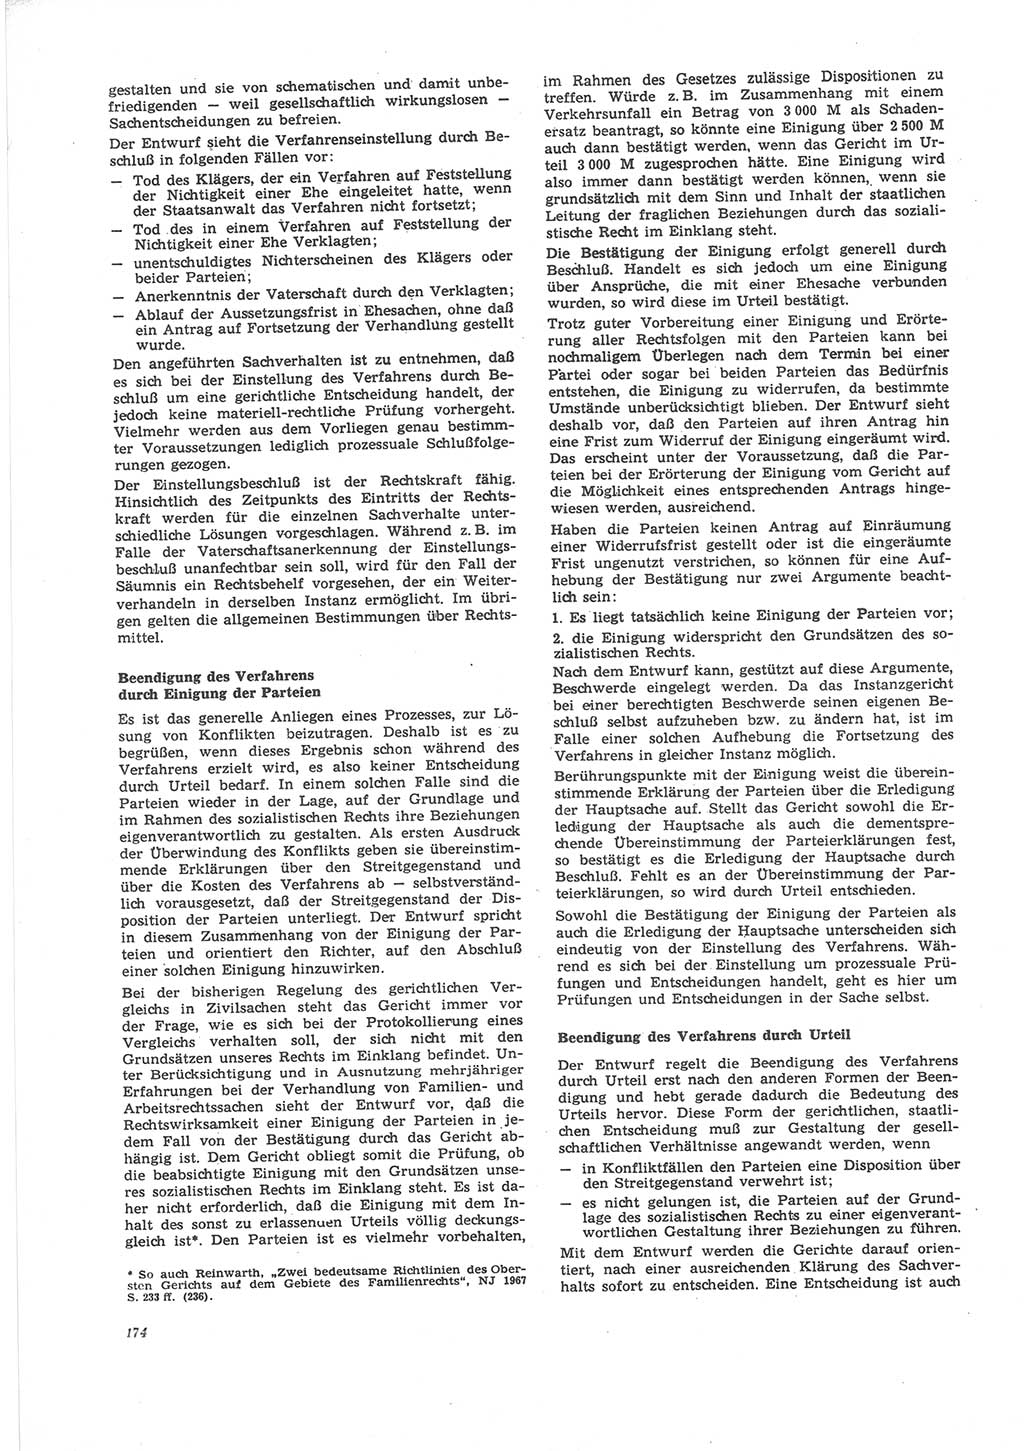 Neue Justiz (NJ), Zeitschrift für Recht und Rechtswissenschaft [Deutsche Demokratische Republik (DDR)], 24. Jahrgang 1970, Seite 174 (NJ DDR 1970, S. 174)